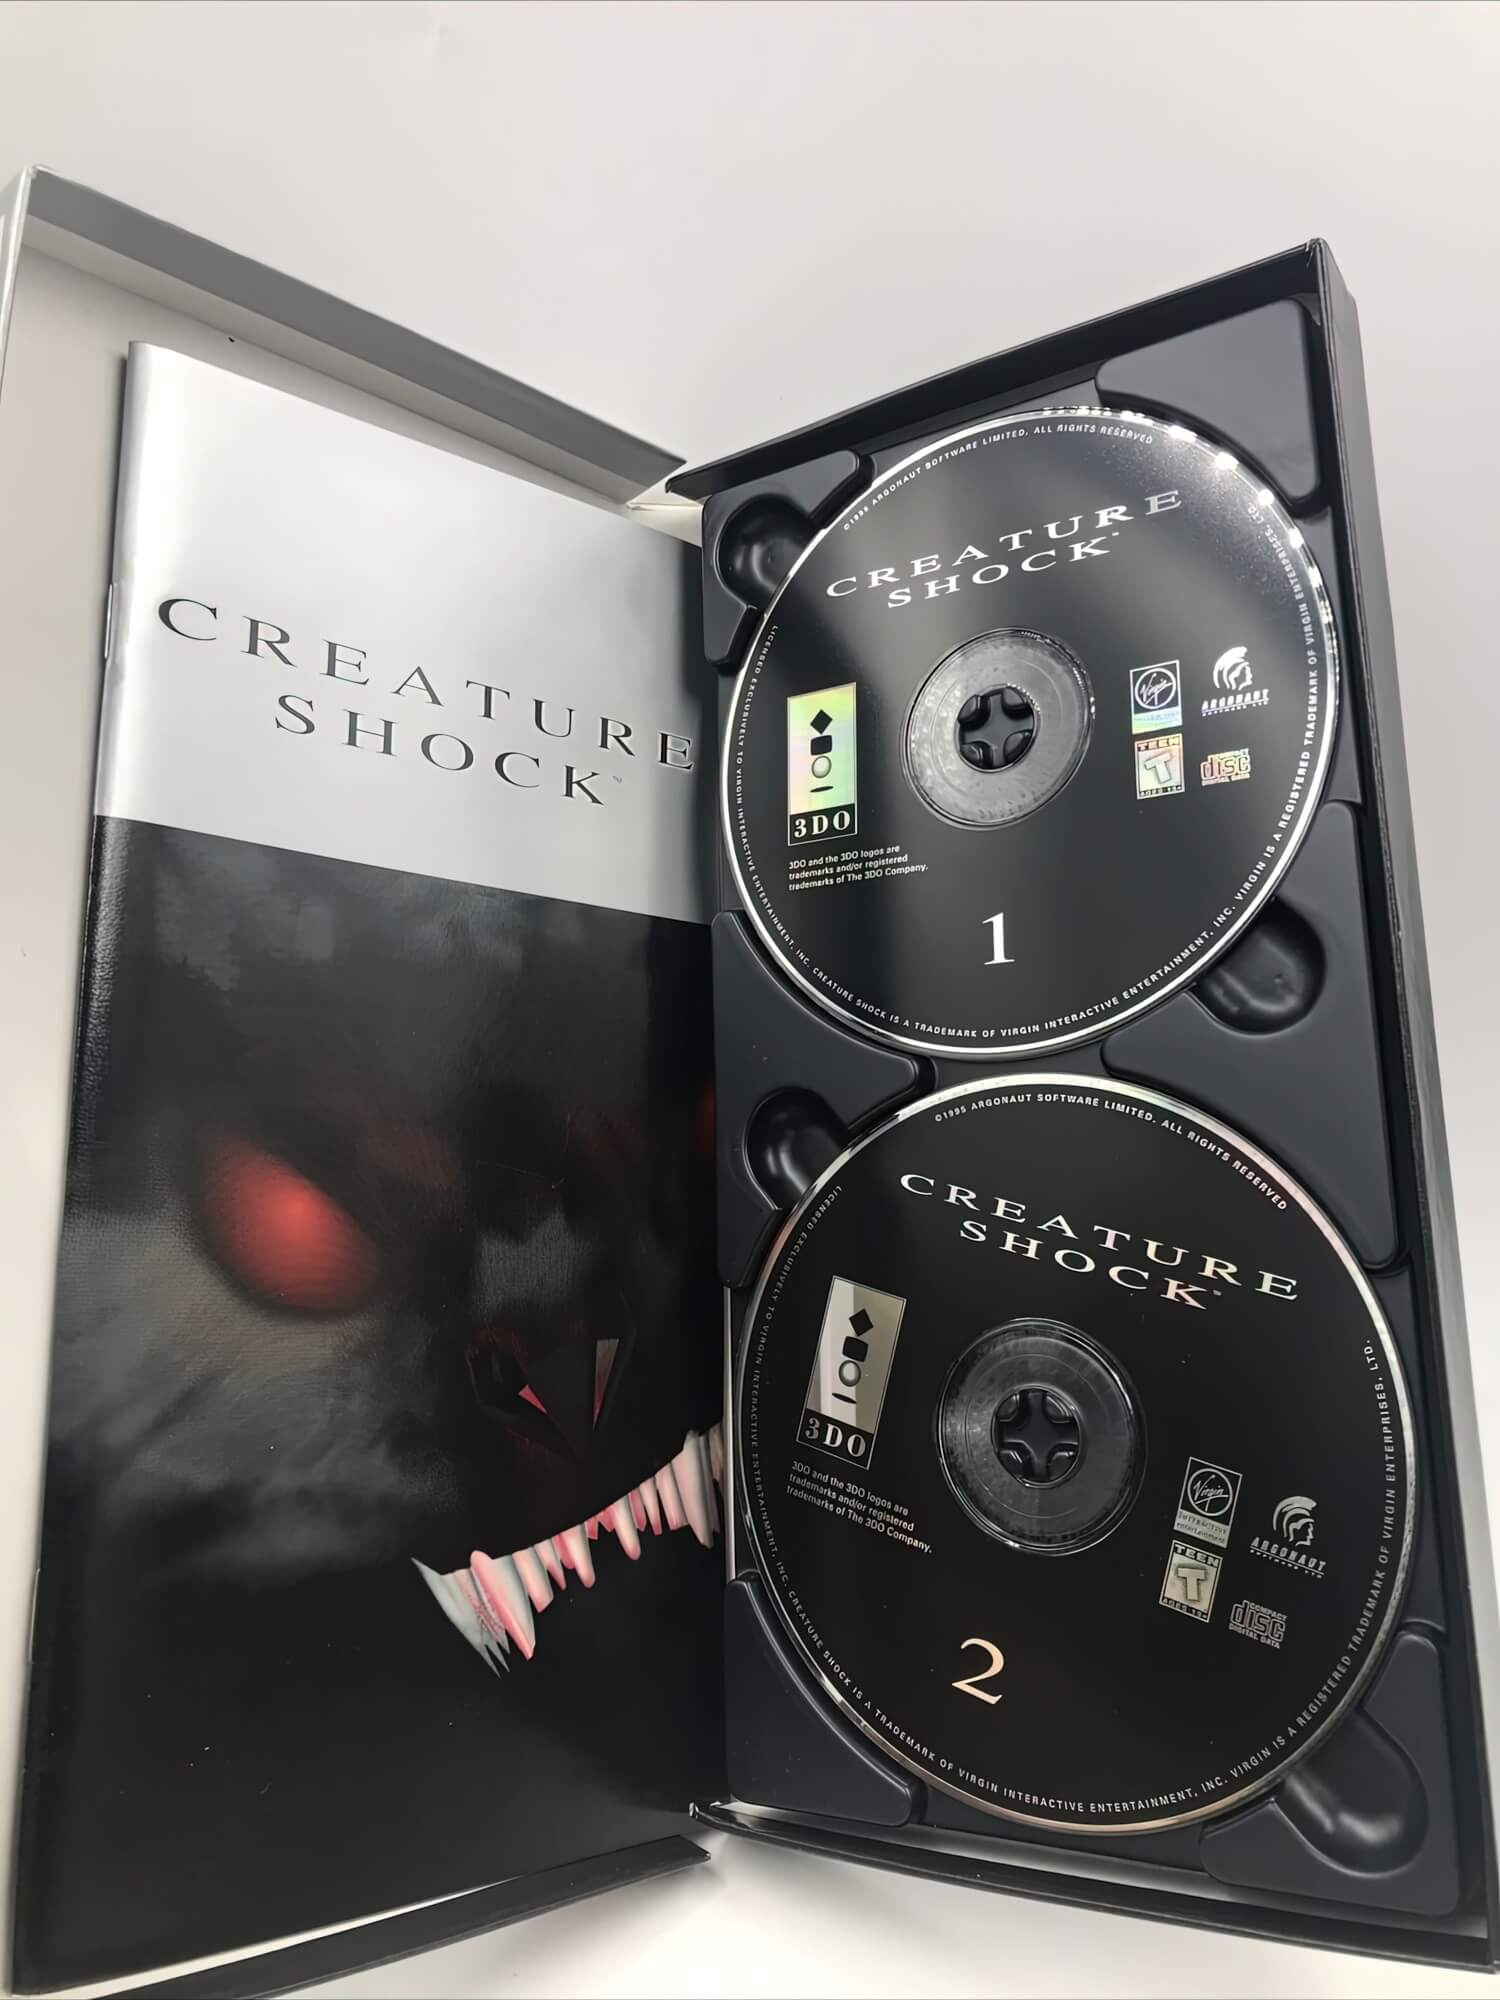 Лицензионный диск Creature Shock для 3DO